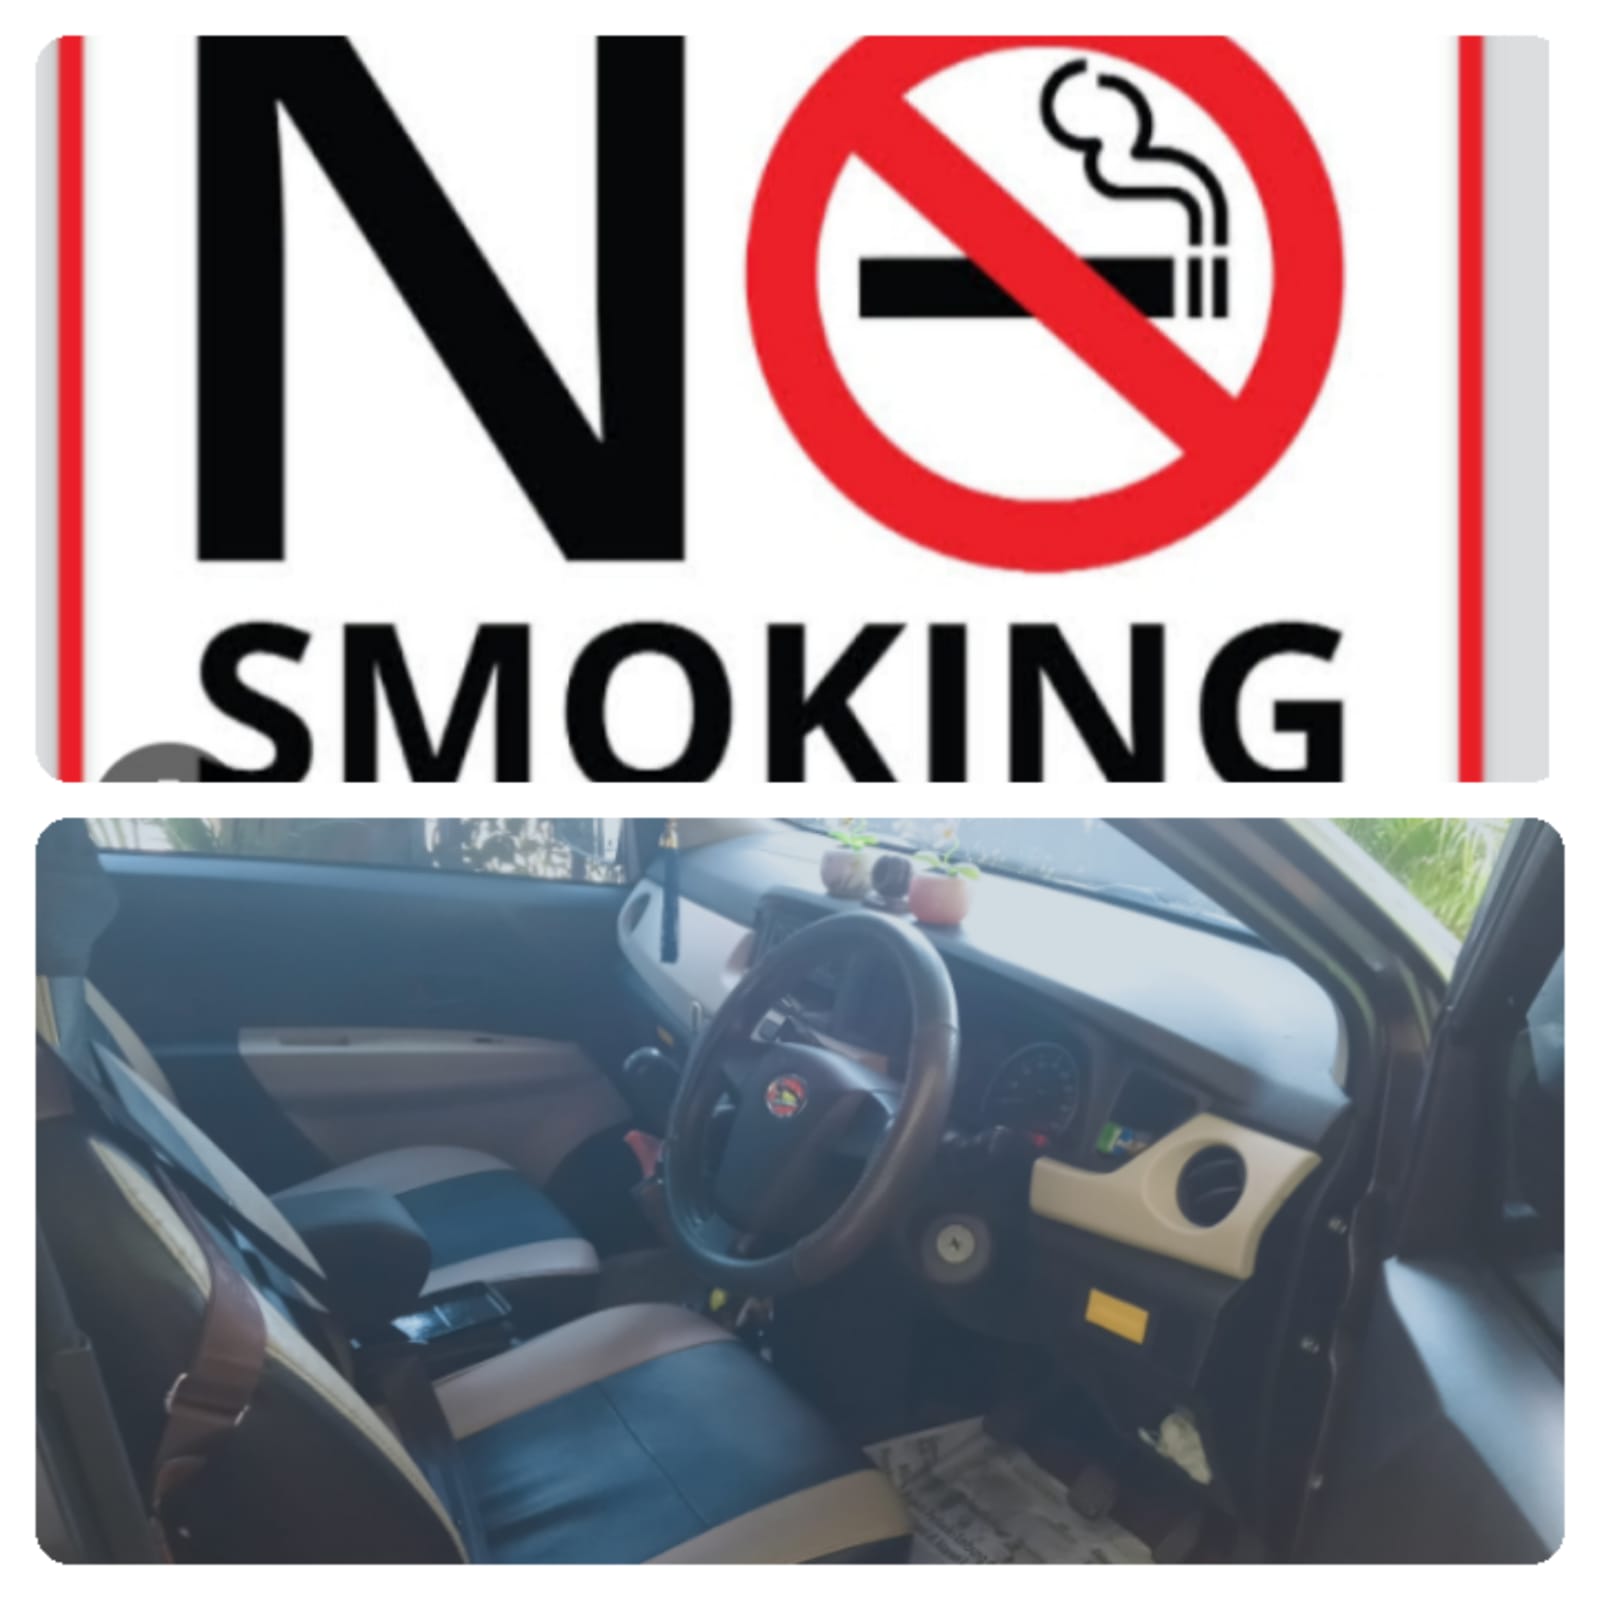 Merokok dan Buka Kaca Paling Sering Dilakukan, Padahal Mempercepat Kerusakan AC Mobil